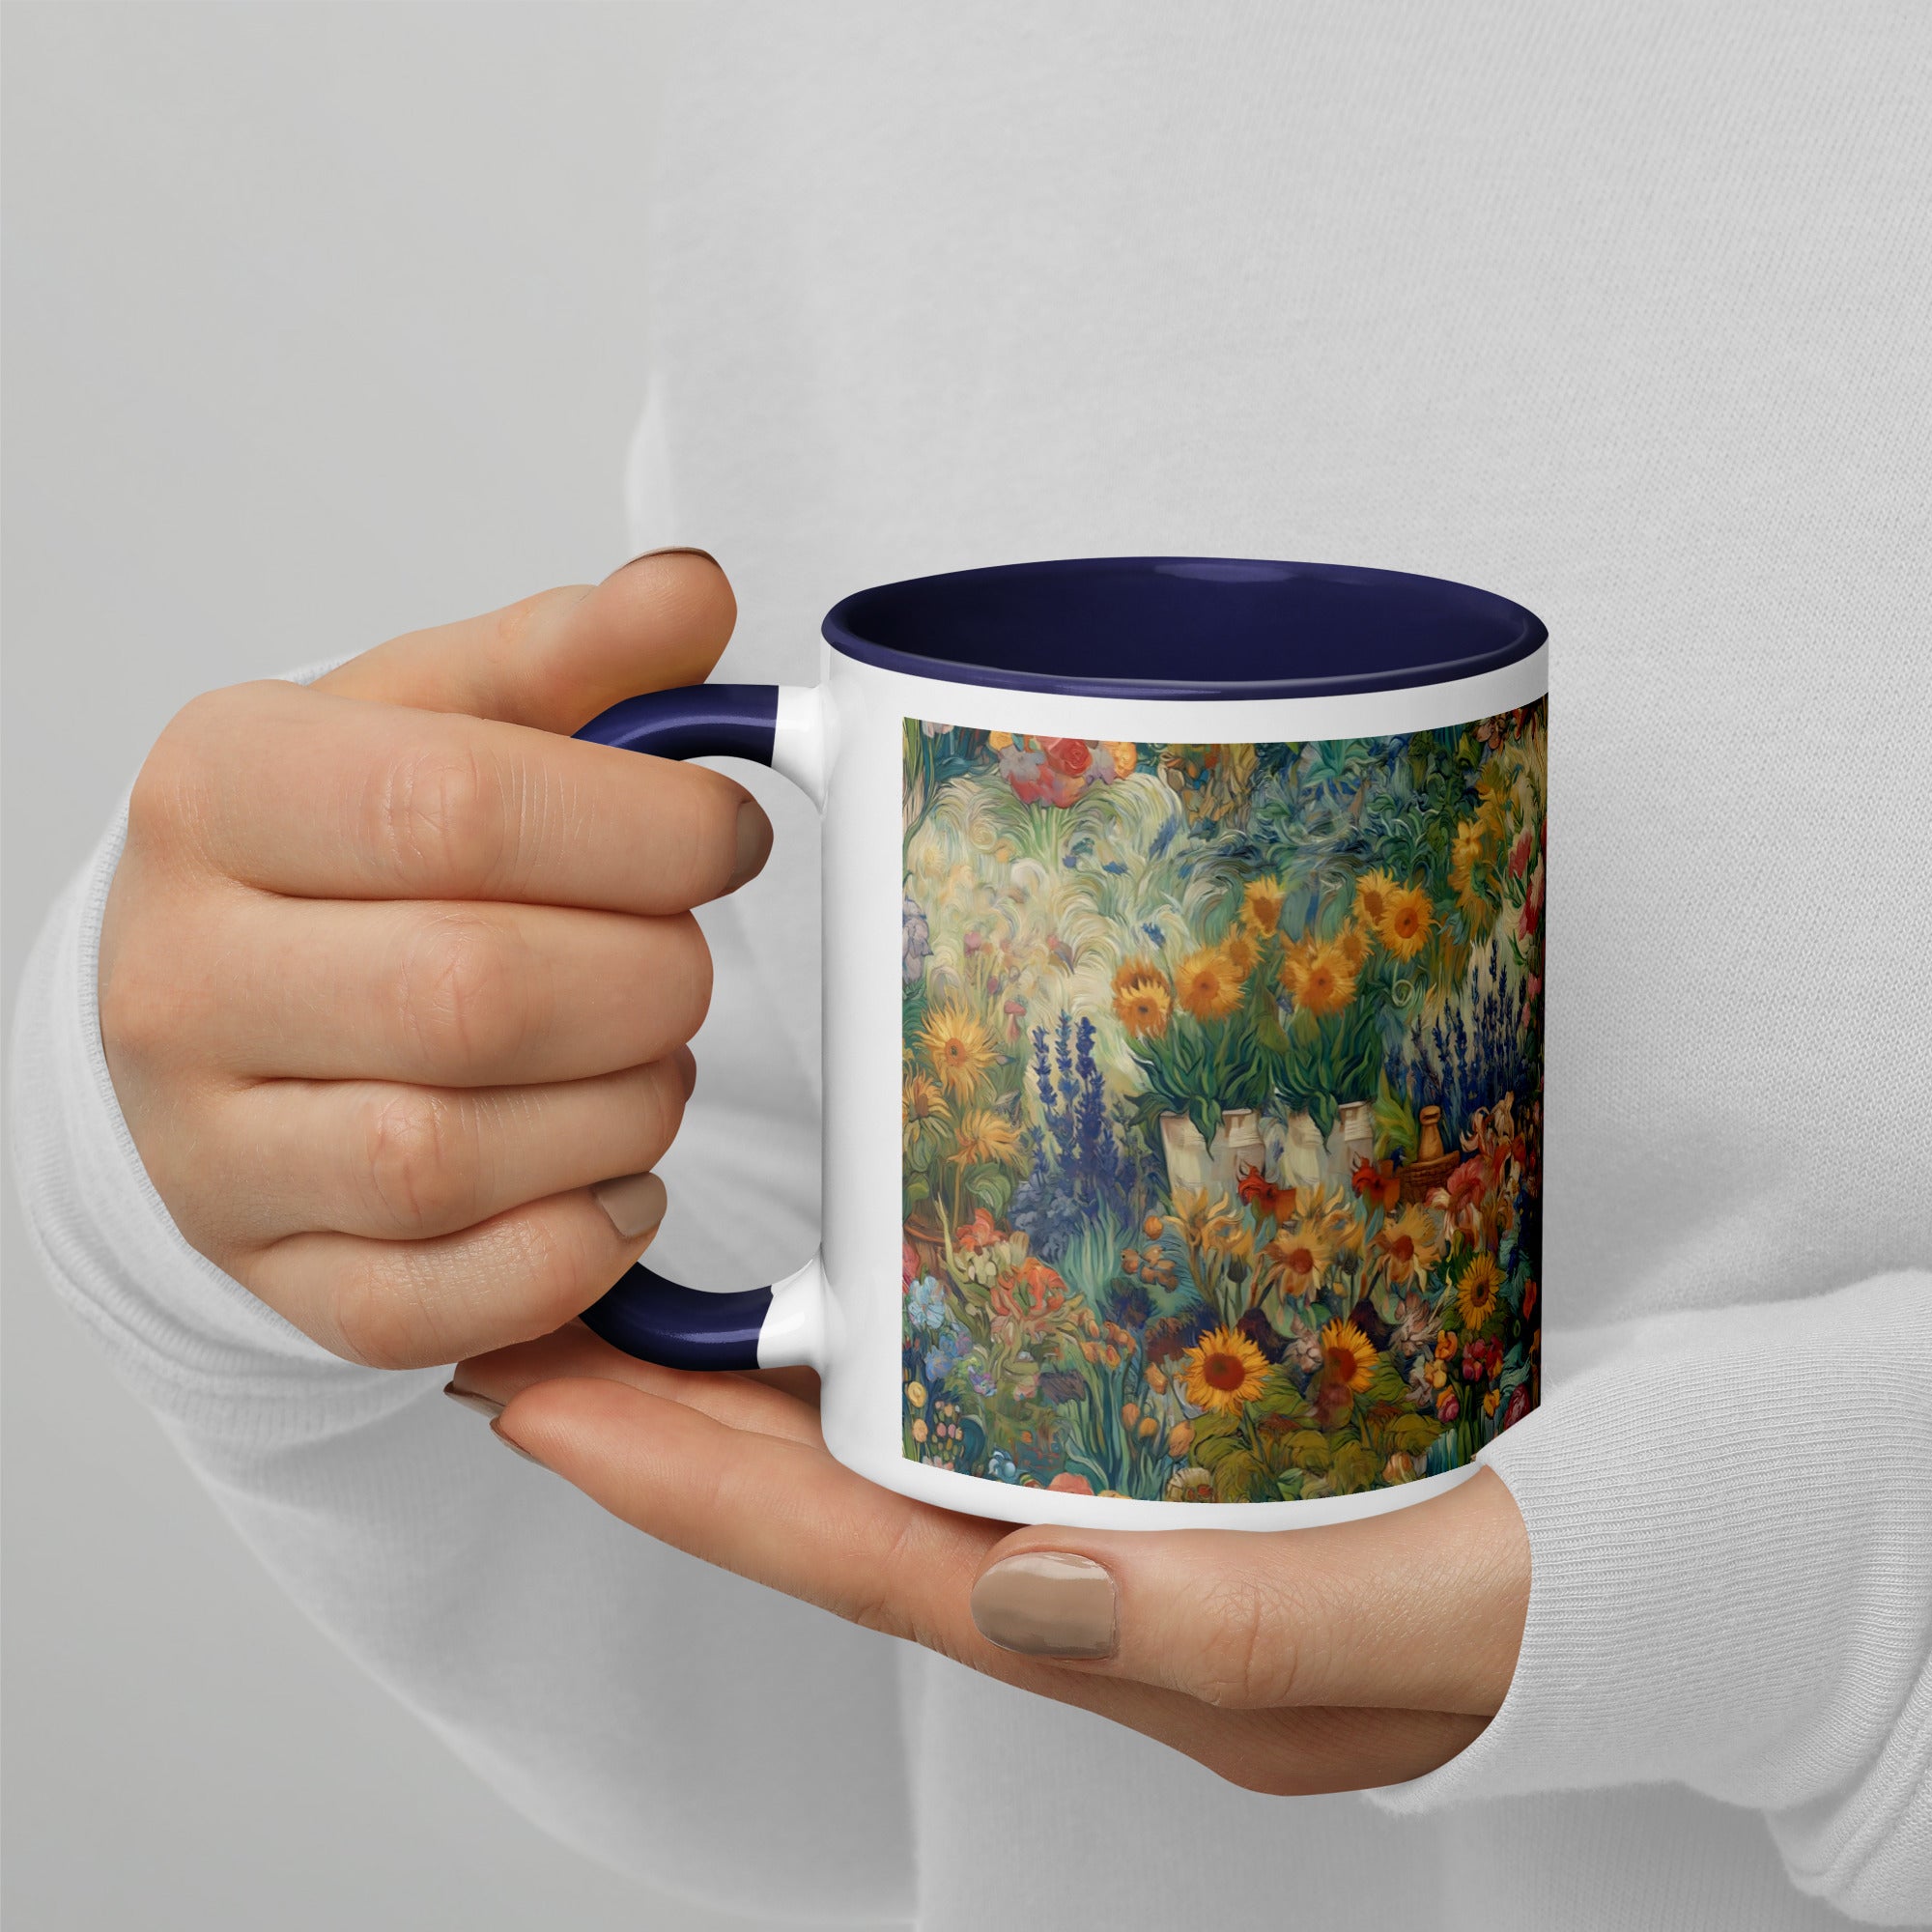 Vincent van Gogh 'Garden at Arles' Famous Painting Ceramic Mug | Premium Art Mug